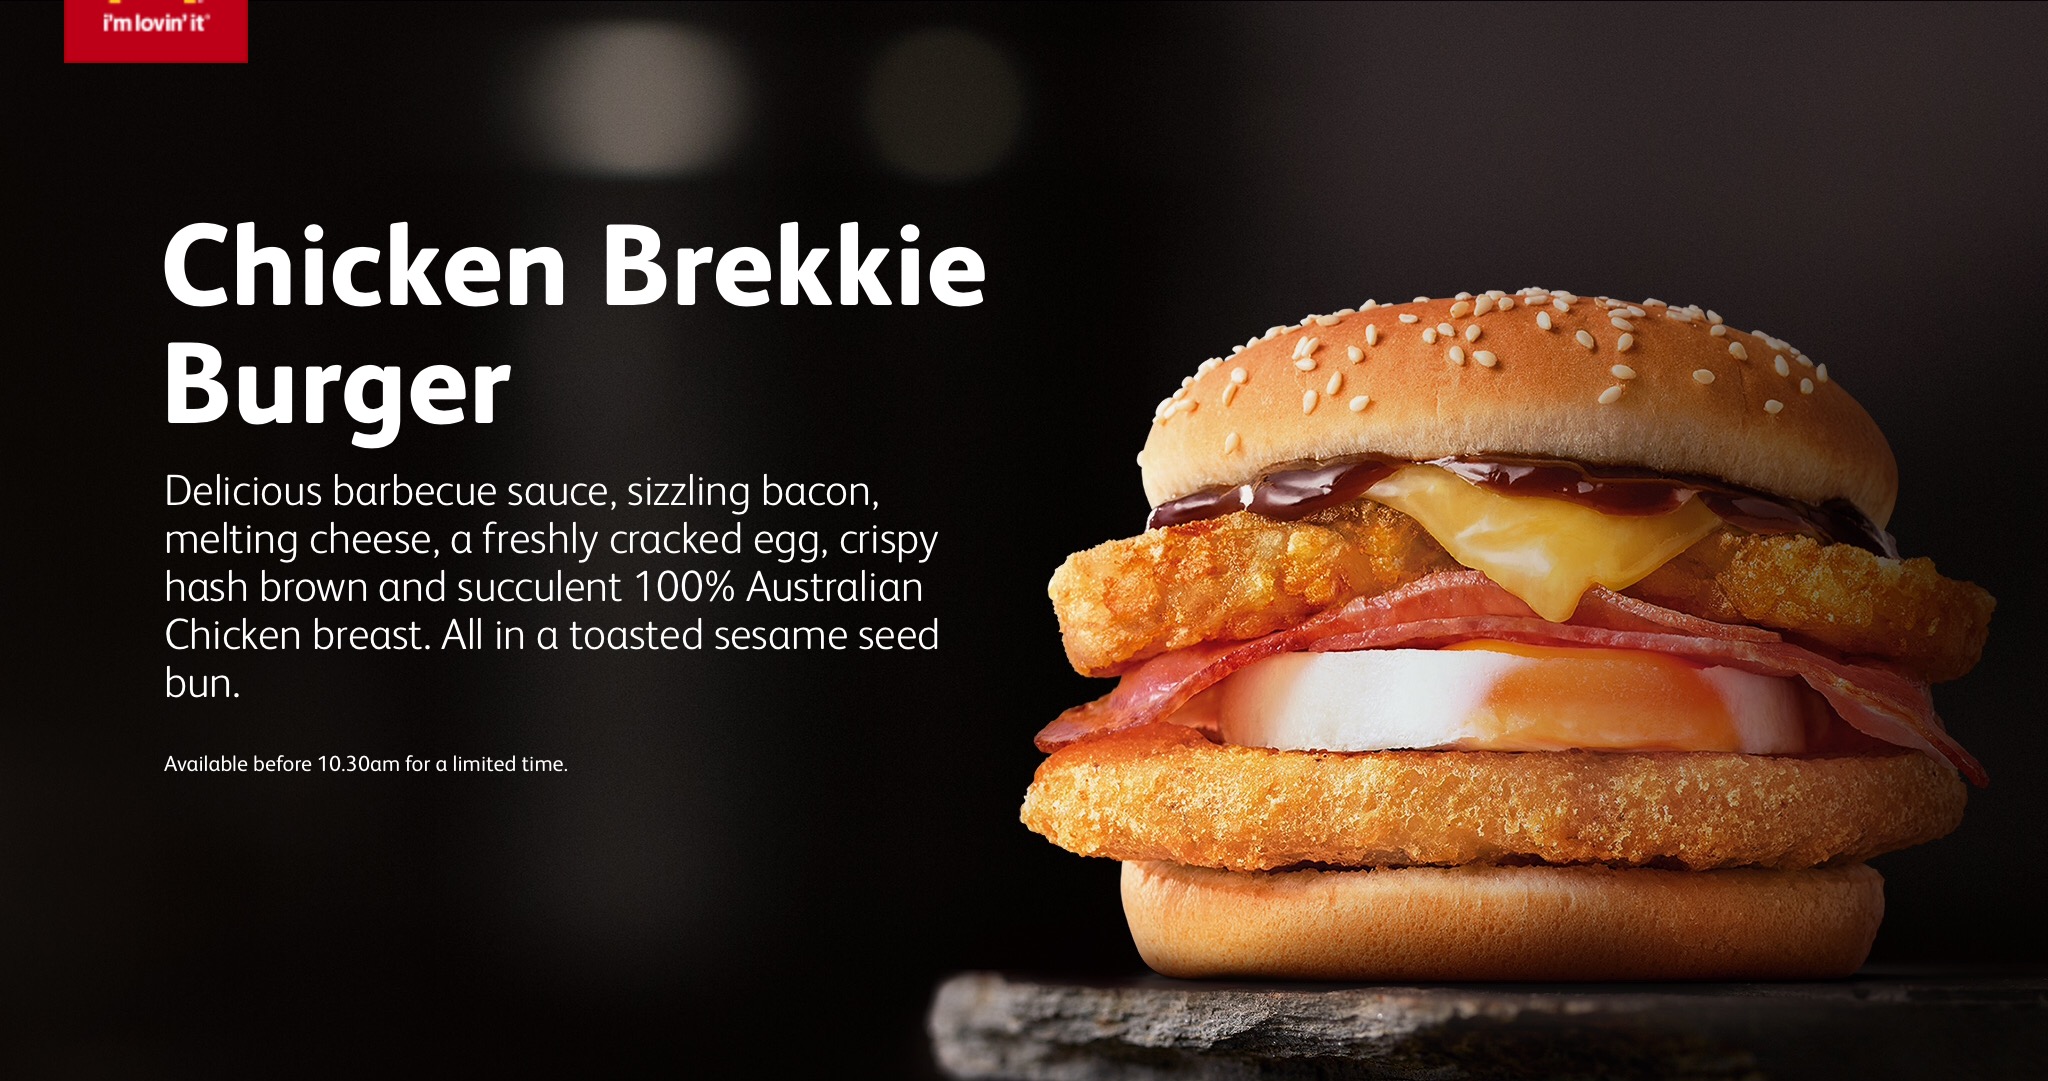 Chicken Brekkie Burger